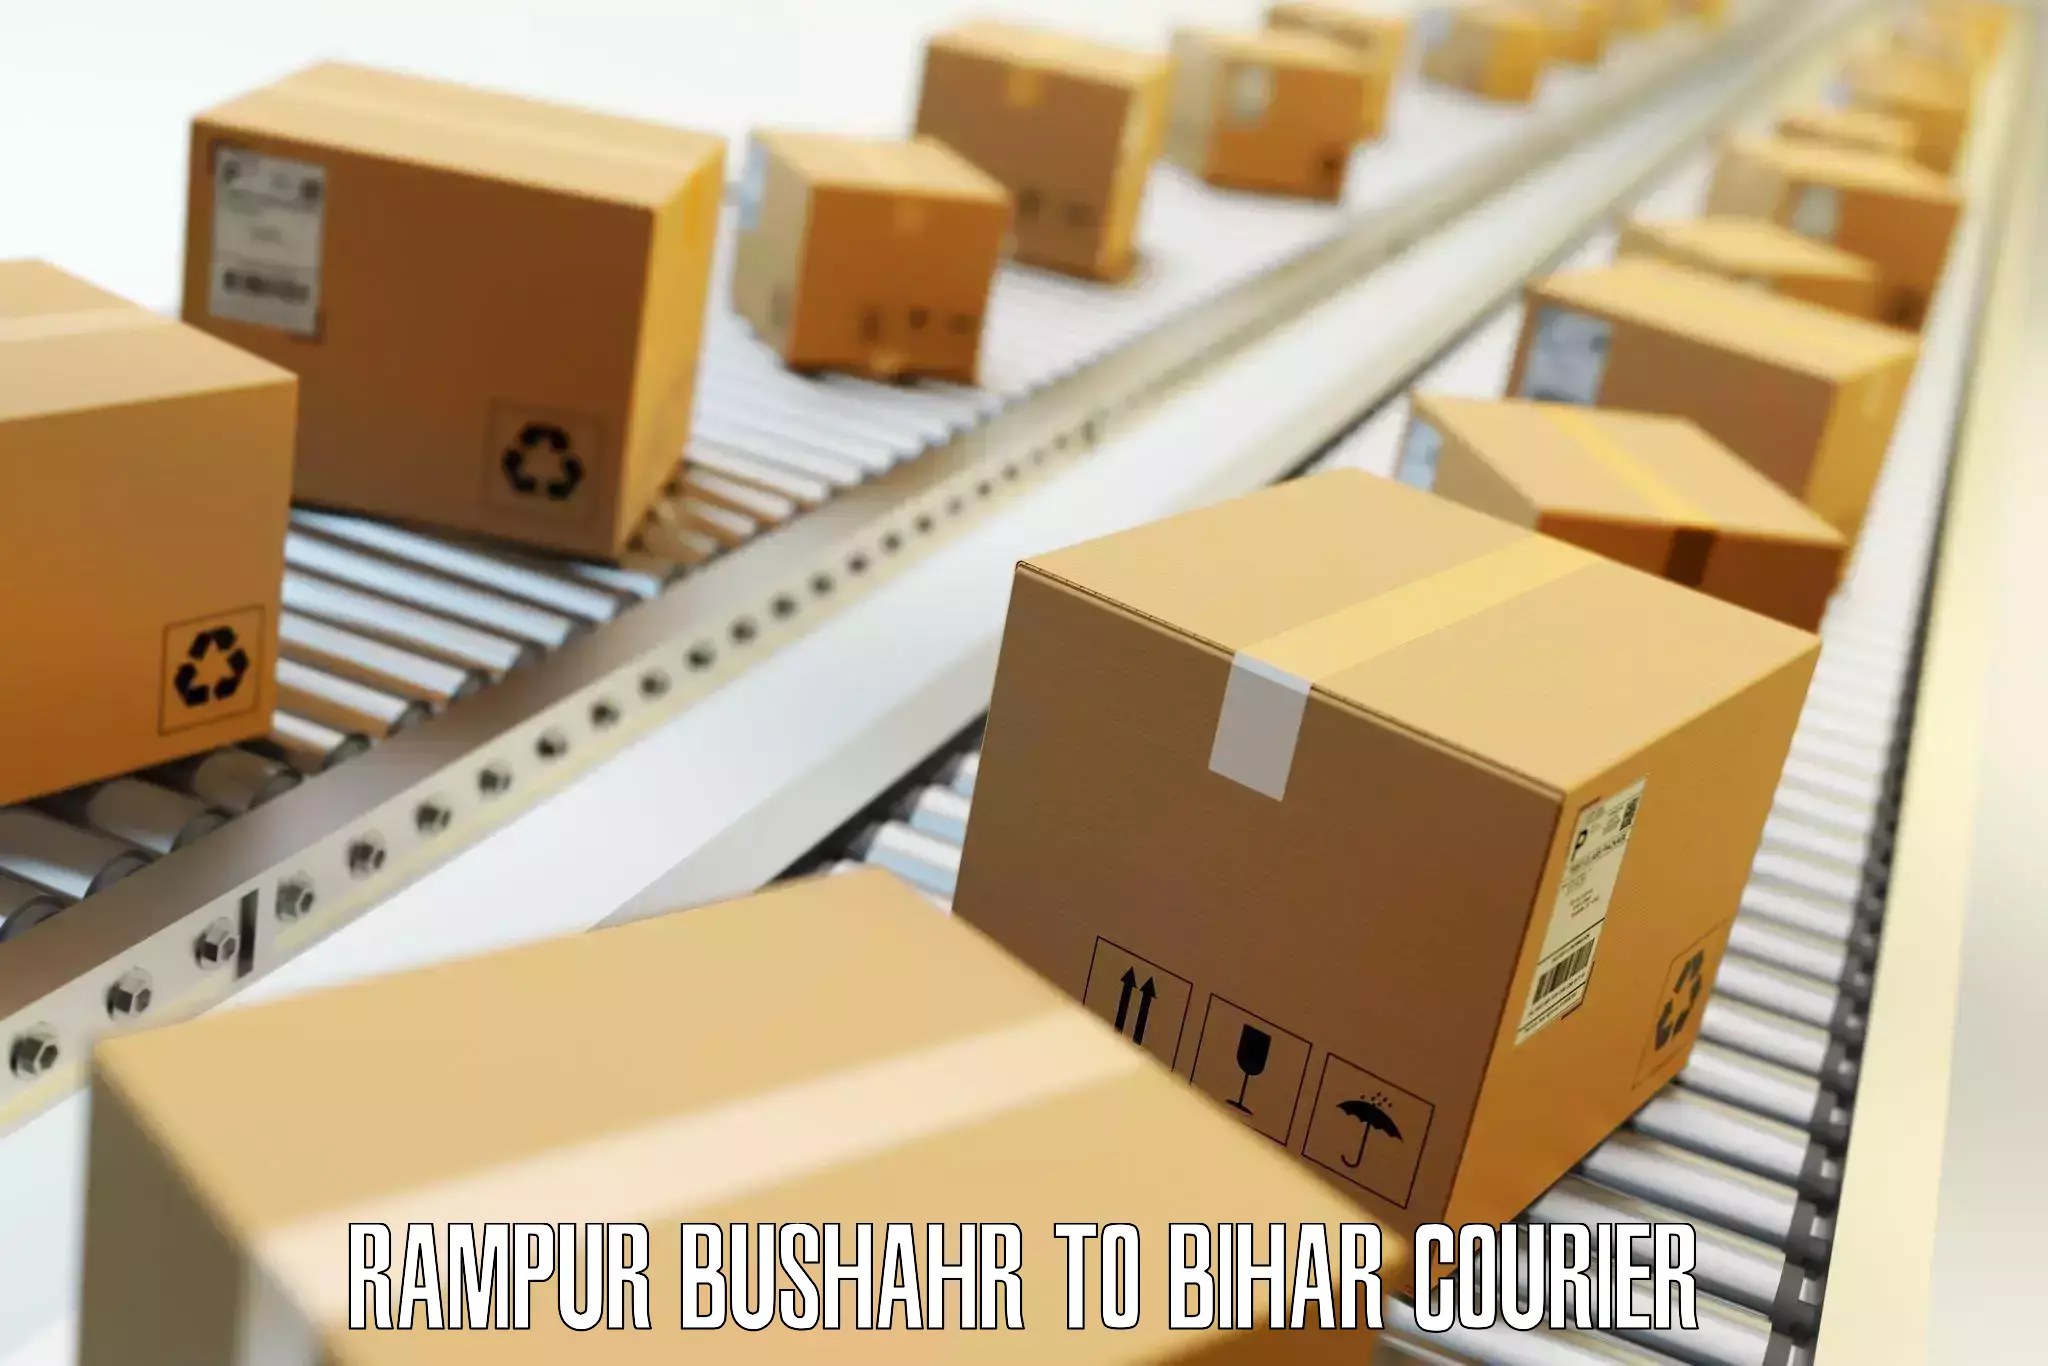 Luggage transport consulting Rampur Bushahr to Maharajganj Vaishali